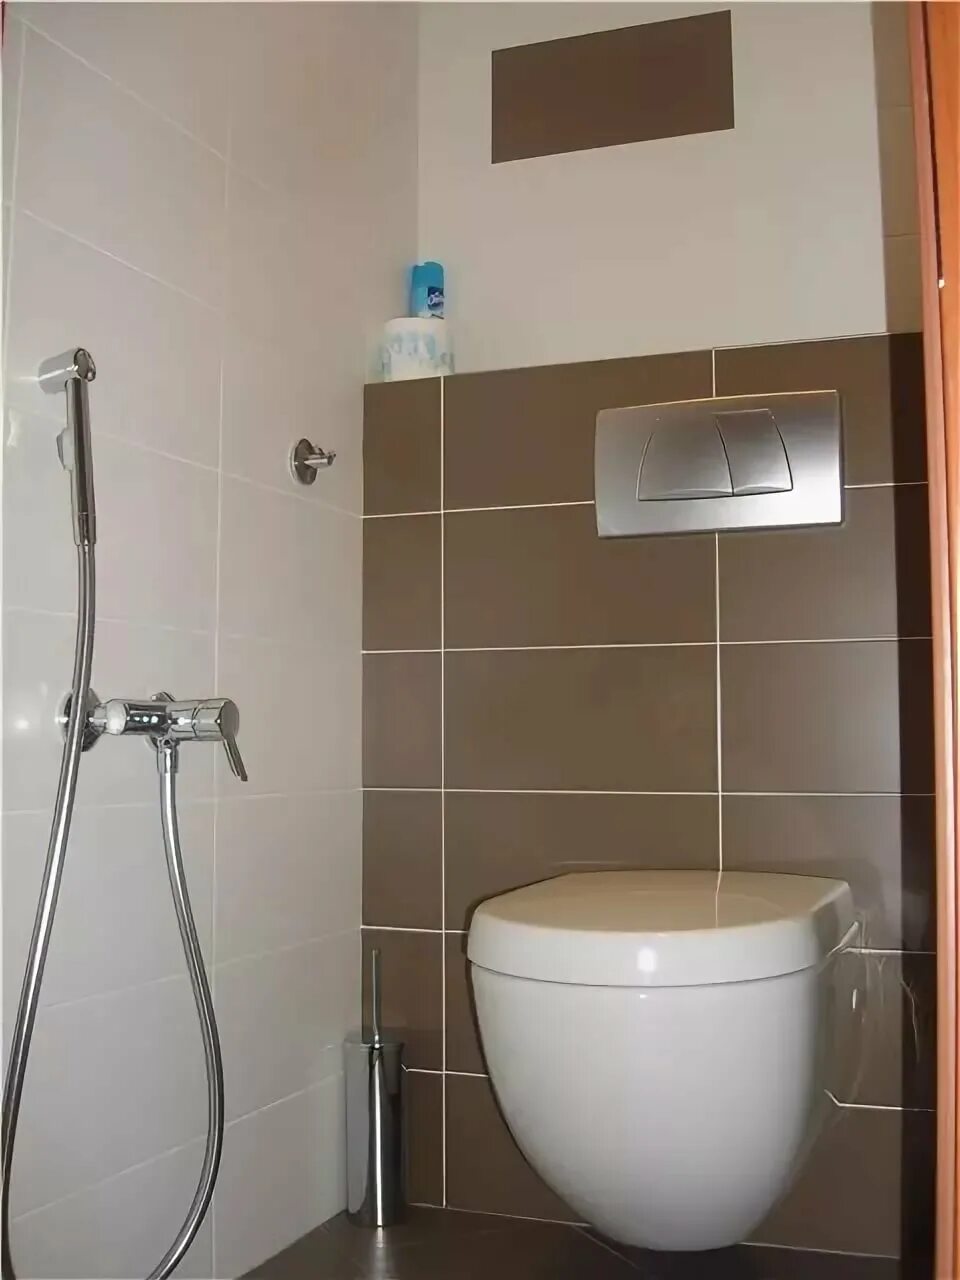 Туалеты души. Гигиенический душ Grohe Sena 26329000. 26329000 Sena душевой набор с гигиеническим душем душевой шланг Silverflex 1000 мм. Инсталляция Грое с гигиеническим душем. Гигиенический душ в туалете Grohe.